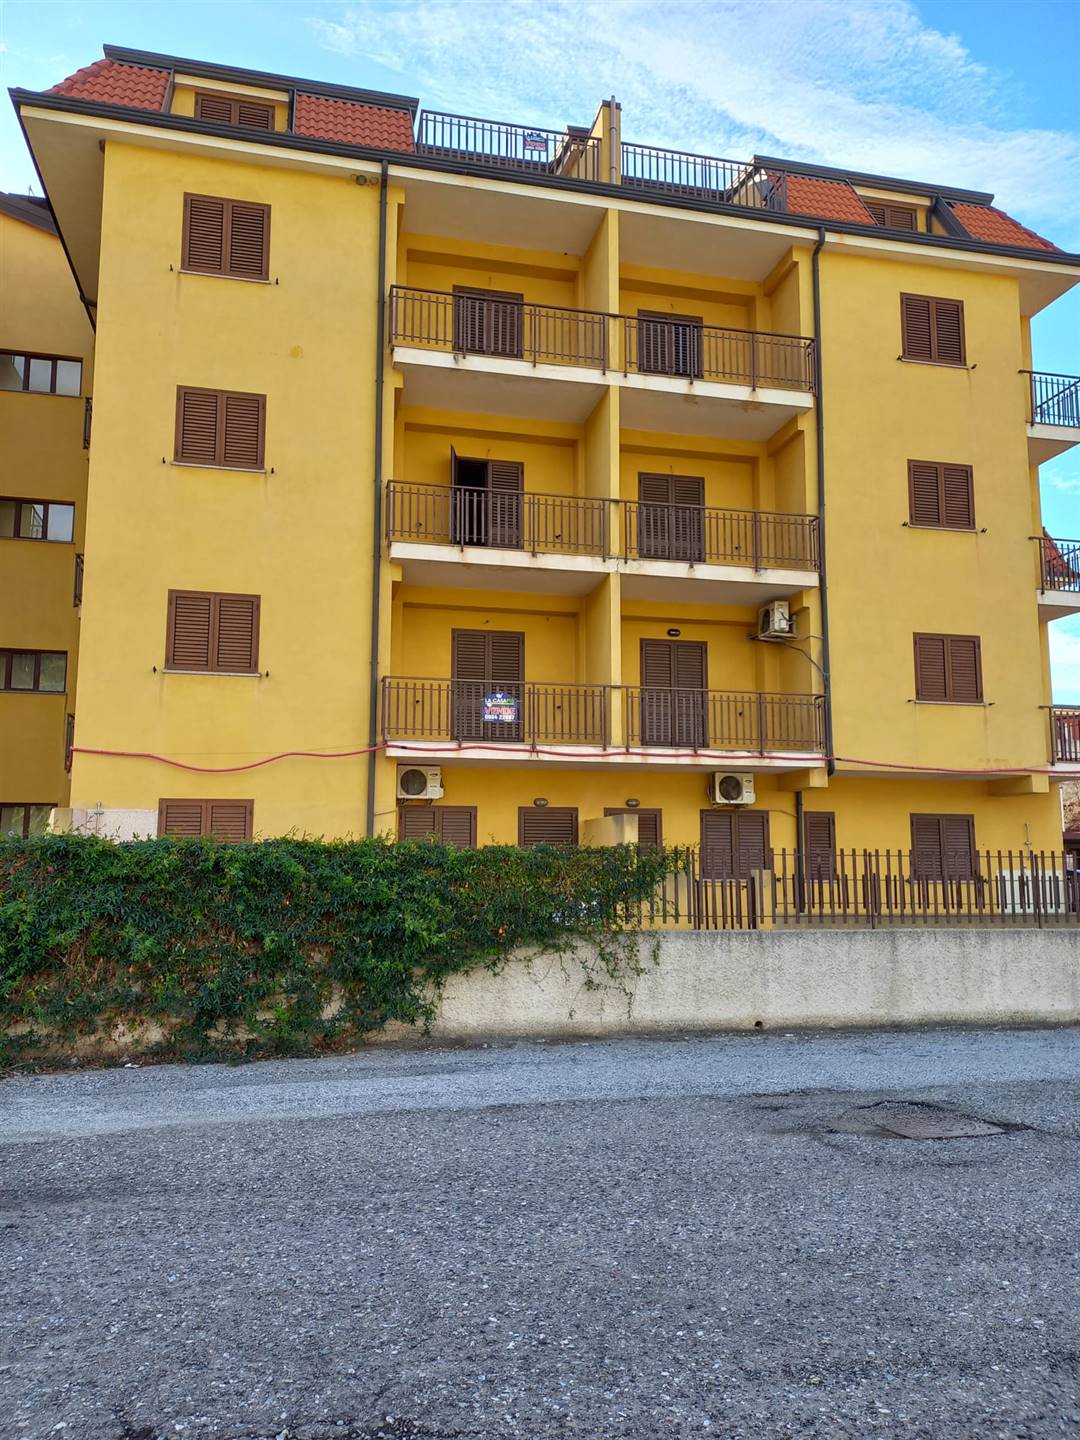 Appartamento in vendita a Nocera Terinese, 3 locali, zona Località: MARINA DI NOCERA TERINESE, prezzo € 69.000 | CambioCasa.it